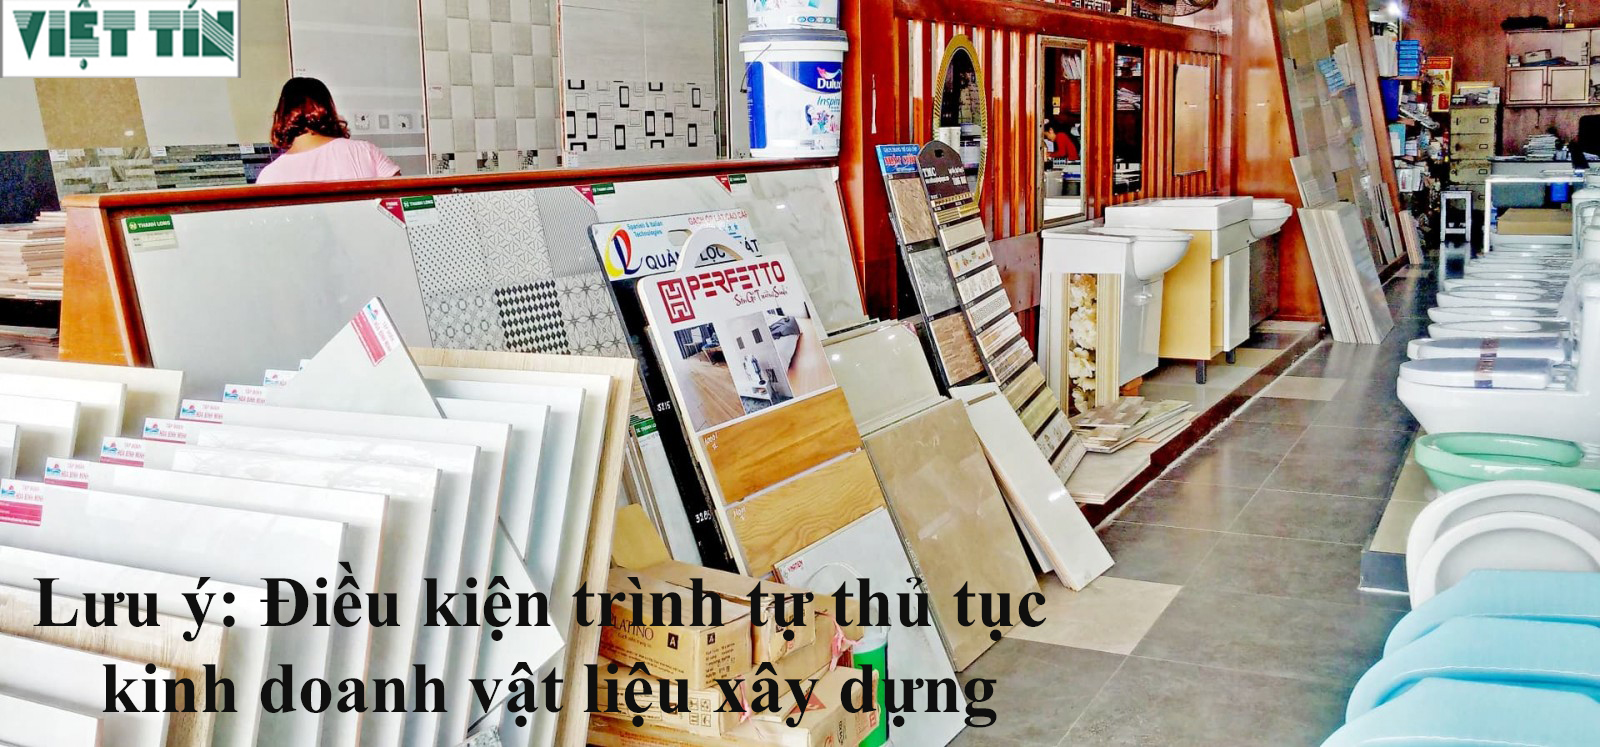 Giấy phép kinh doanh vật liệu xây dựng - Luật Việt Tín